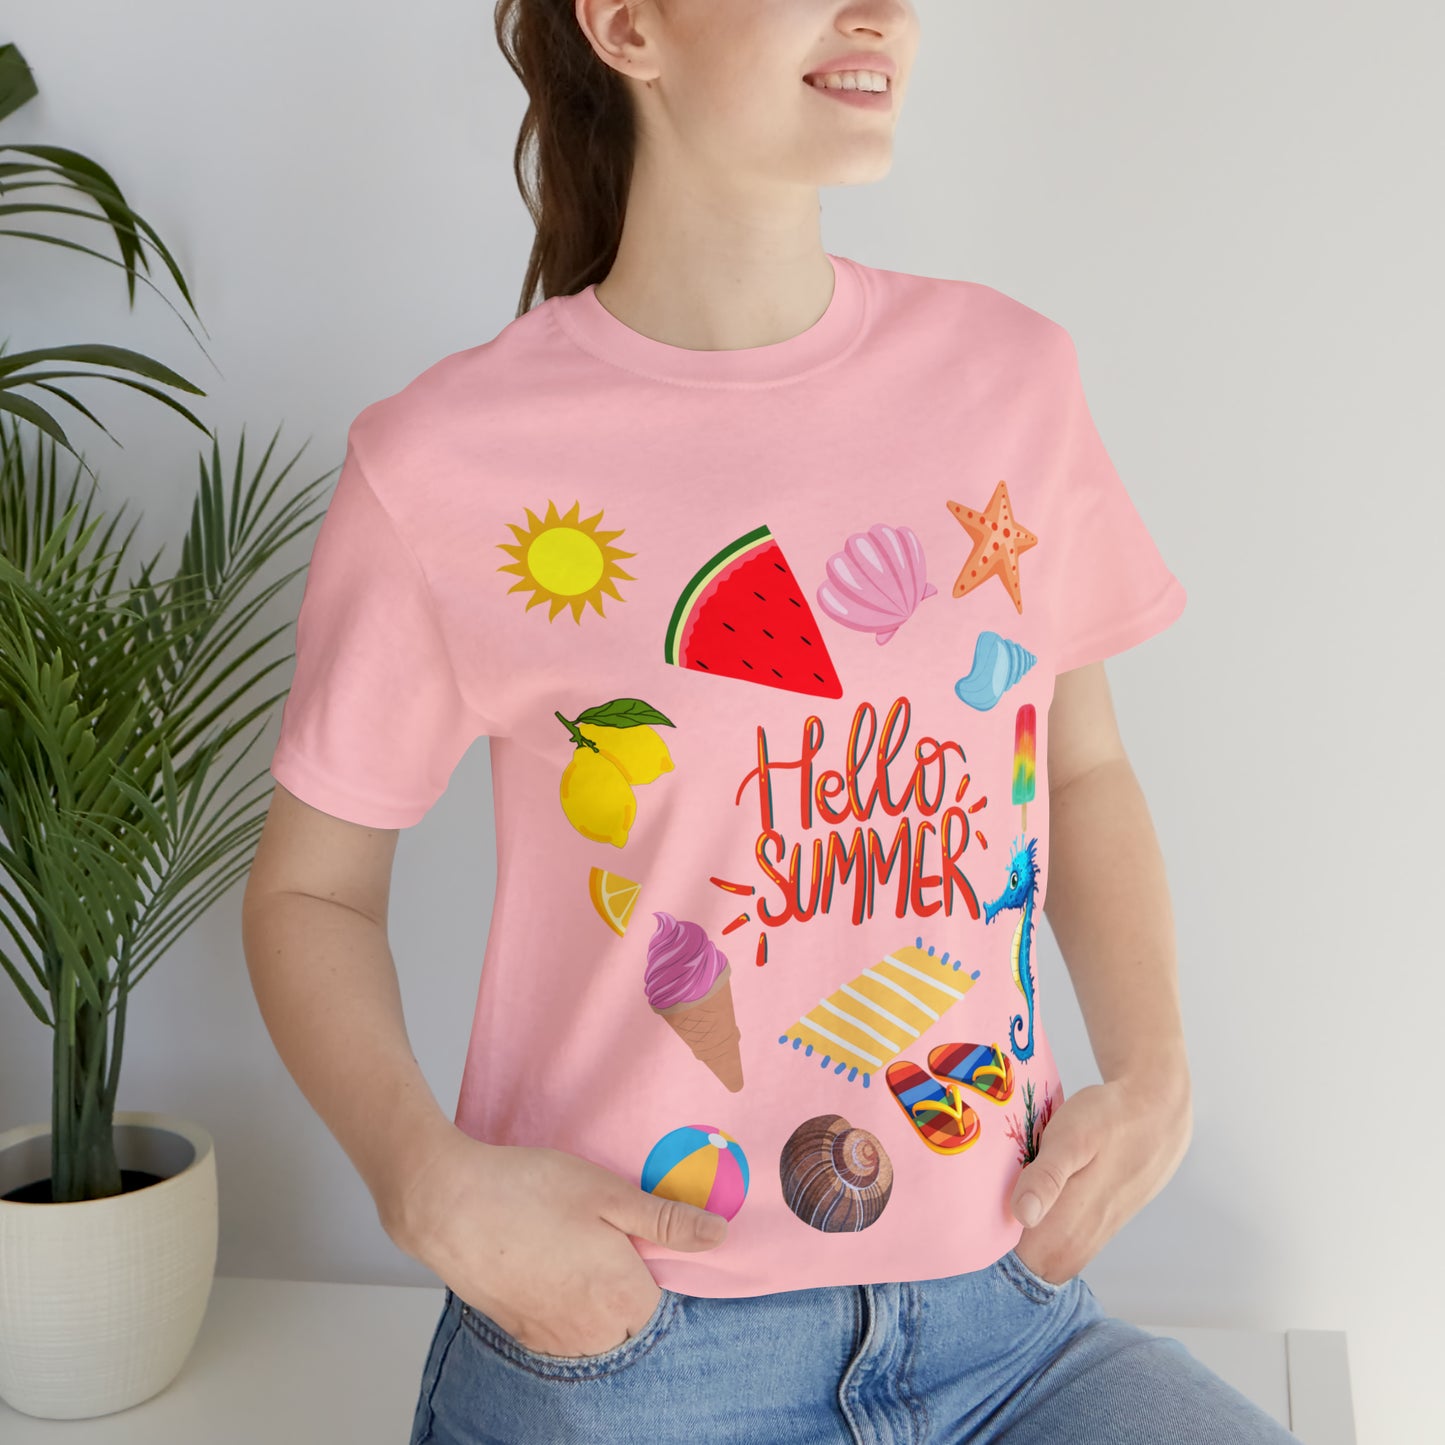 Hello Summer shirt, Summer shirts for women and men, Summer Casual Top Tee